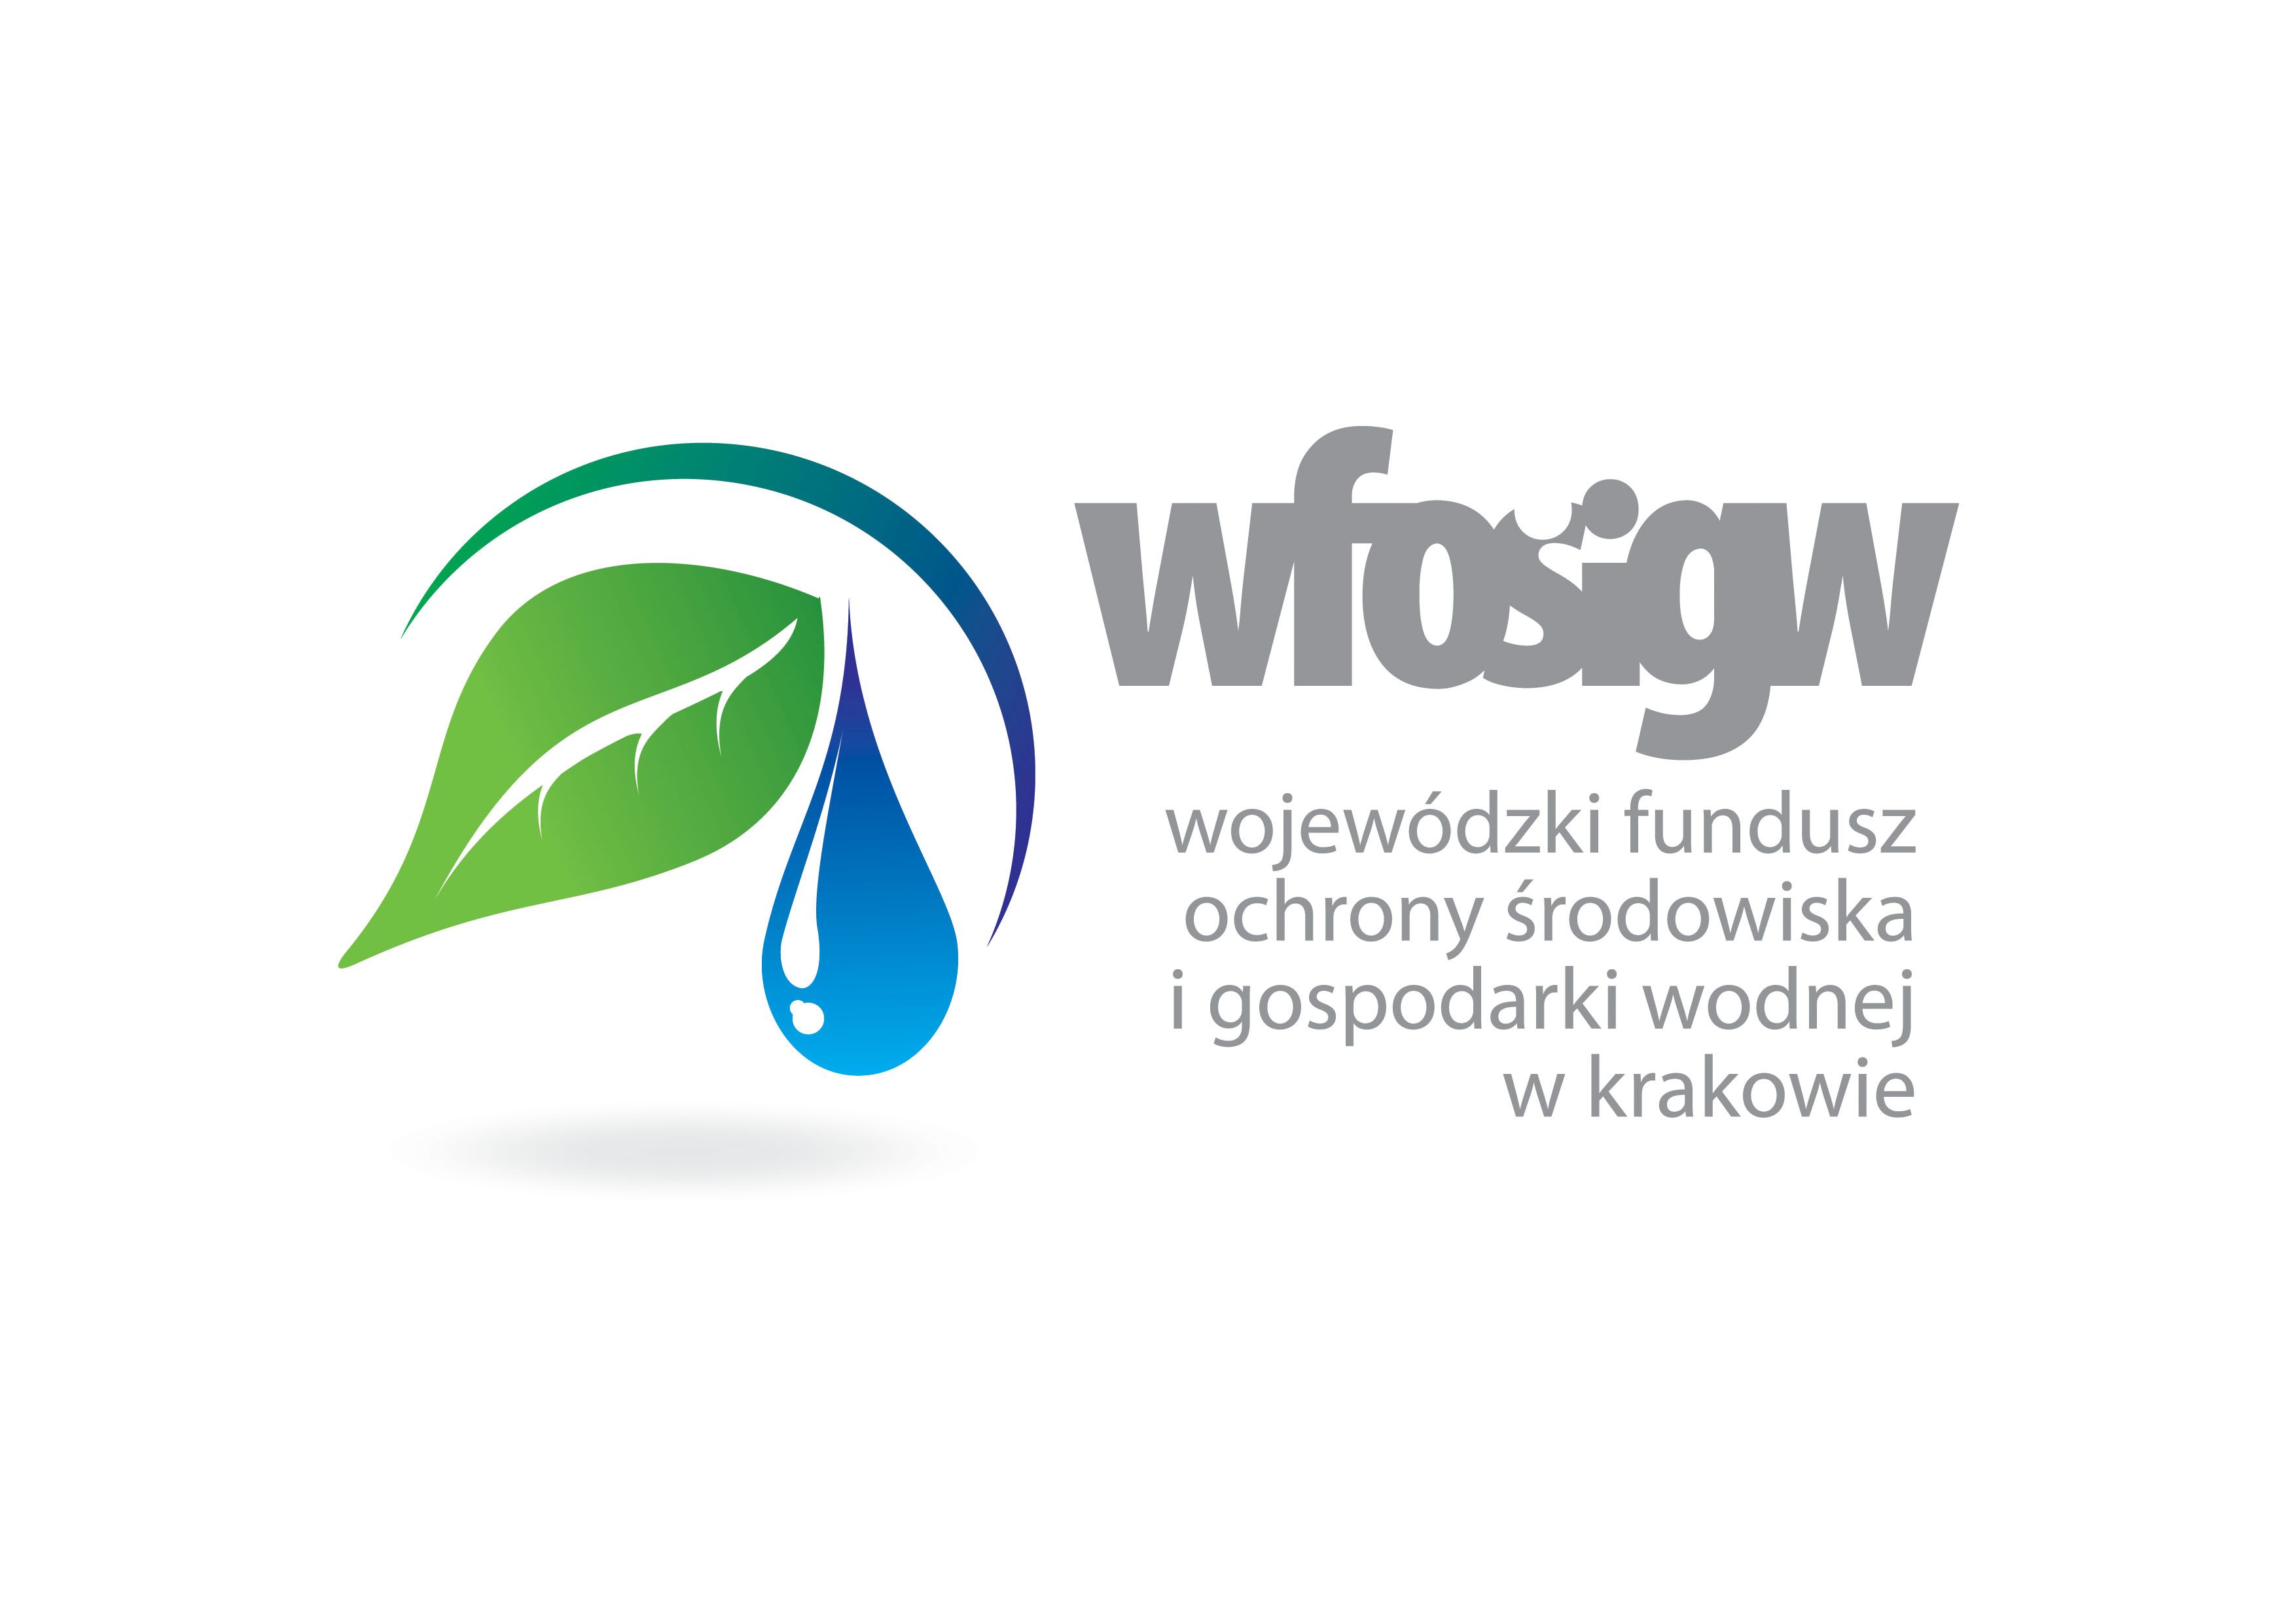 Logotyp Wojewódzkiego Funduszu Gospodarki Wodnej.